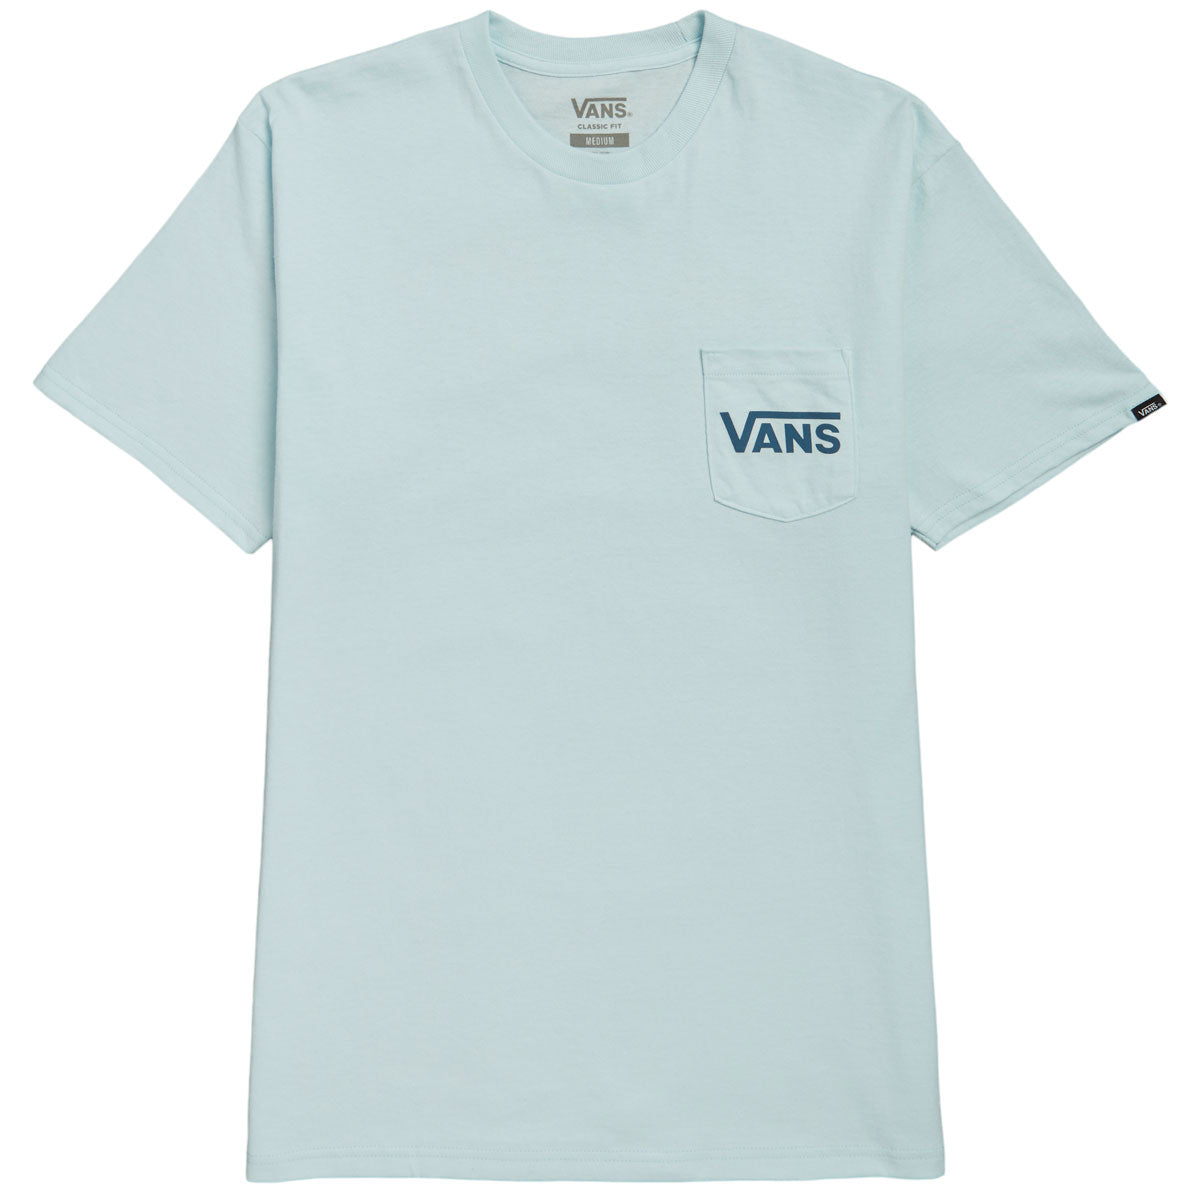 Vans Classic Back T-Shirt - Blue Glow/Teal – CCS